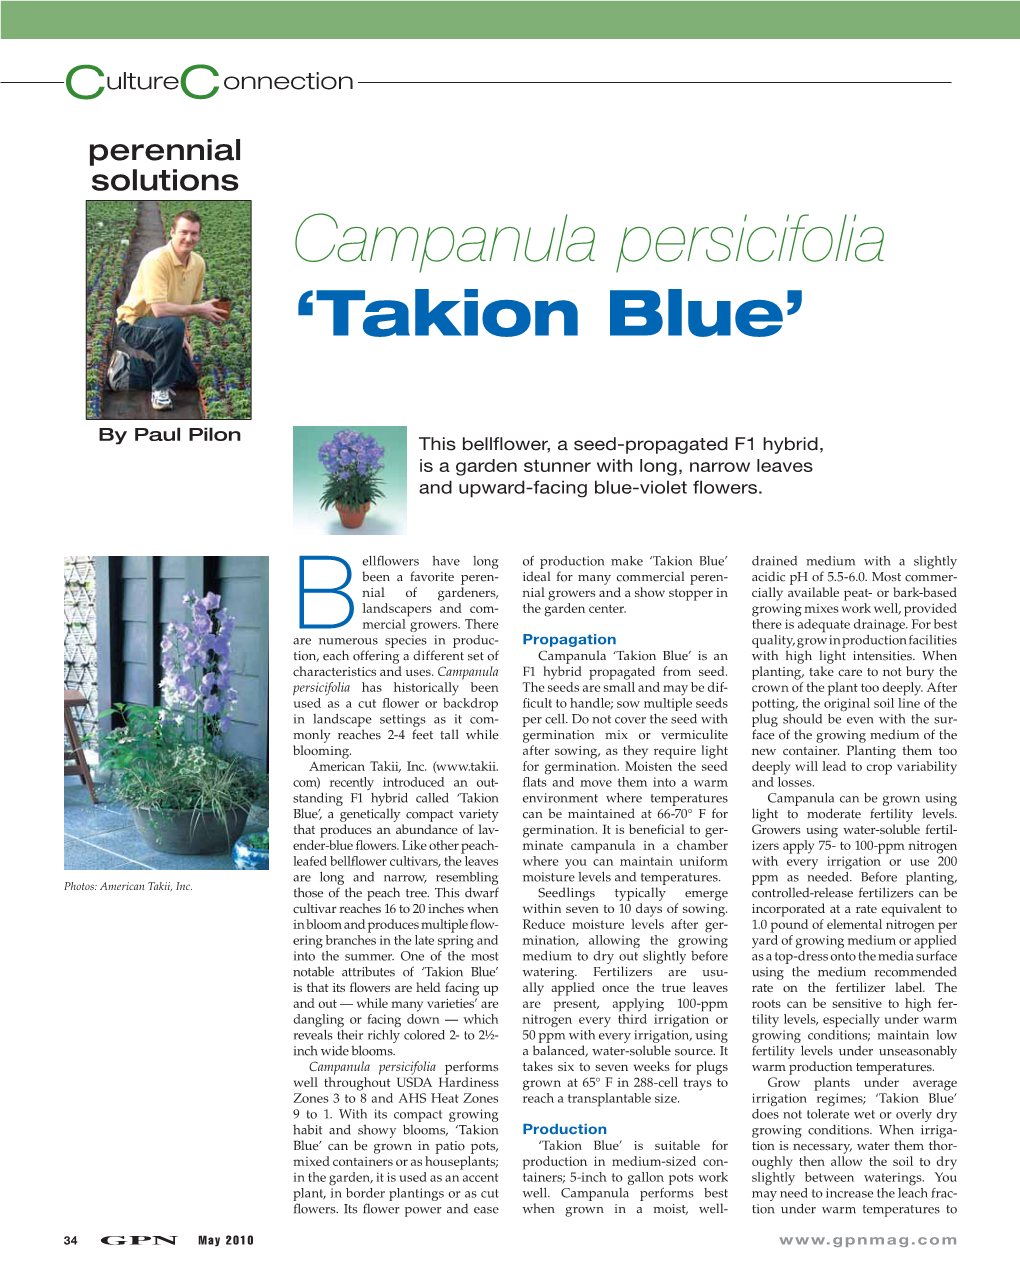 Campanula Persicifolia ‘Takion Blue’